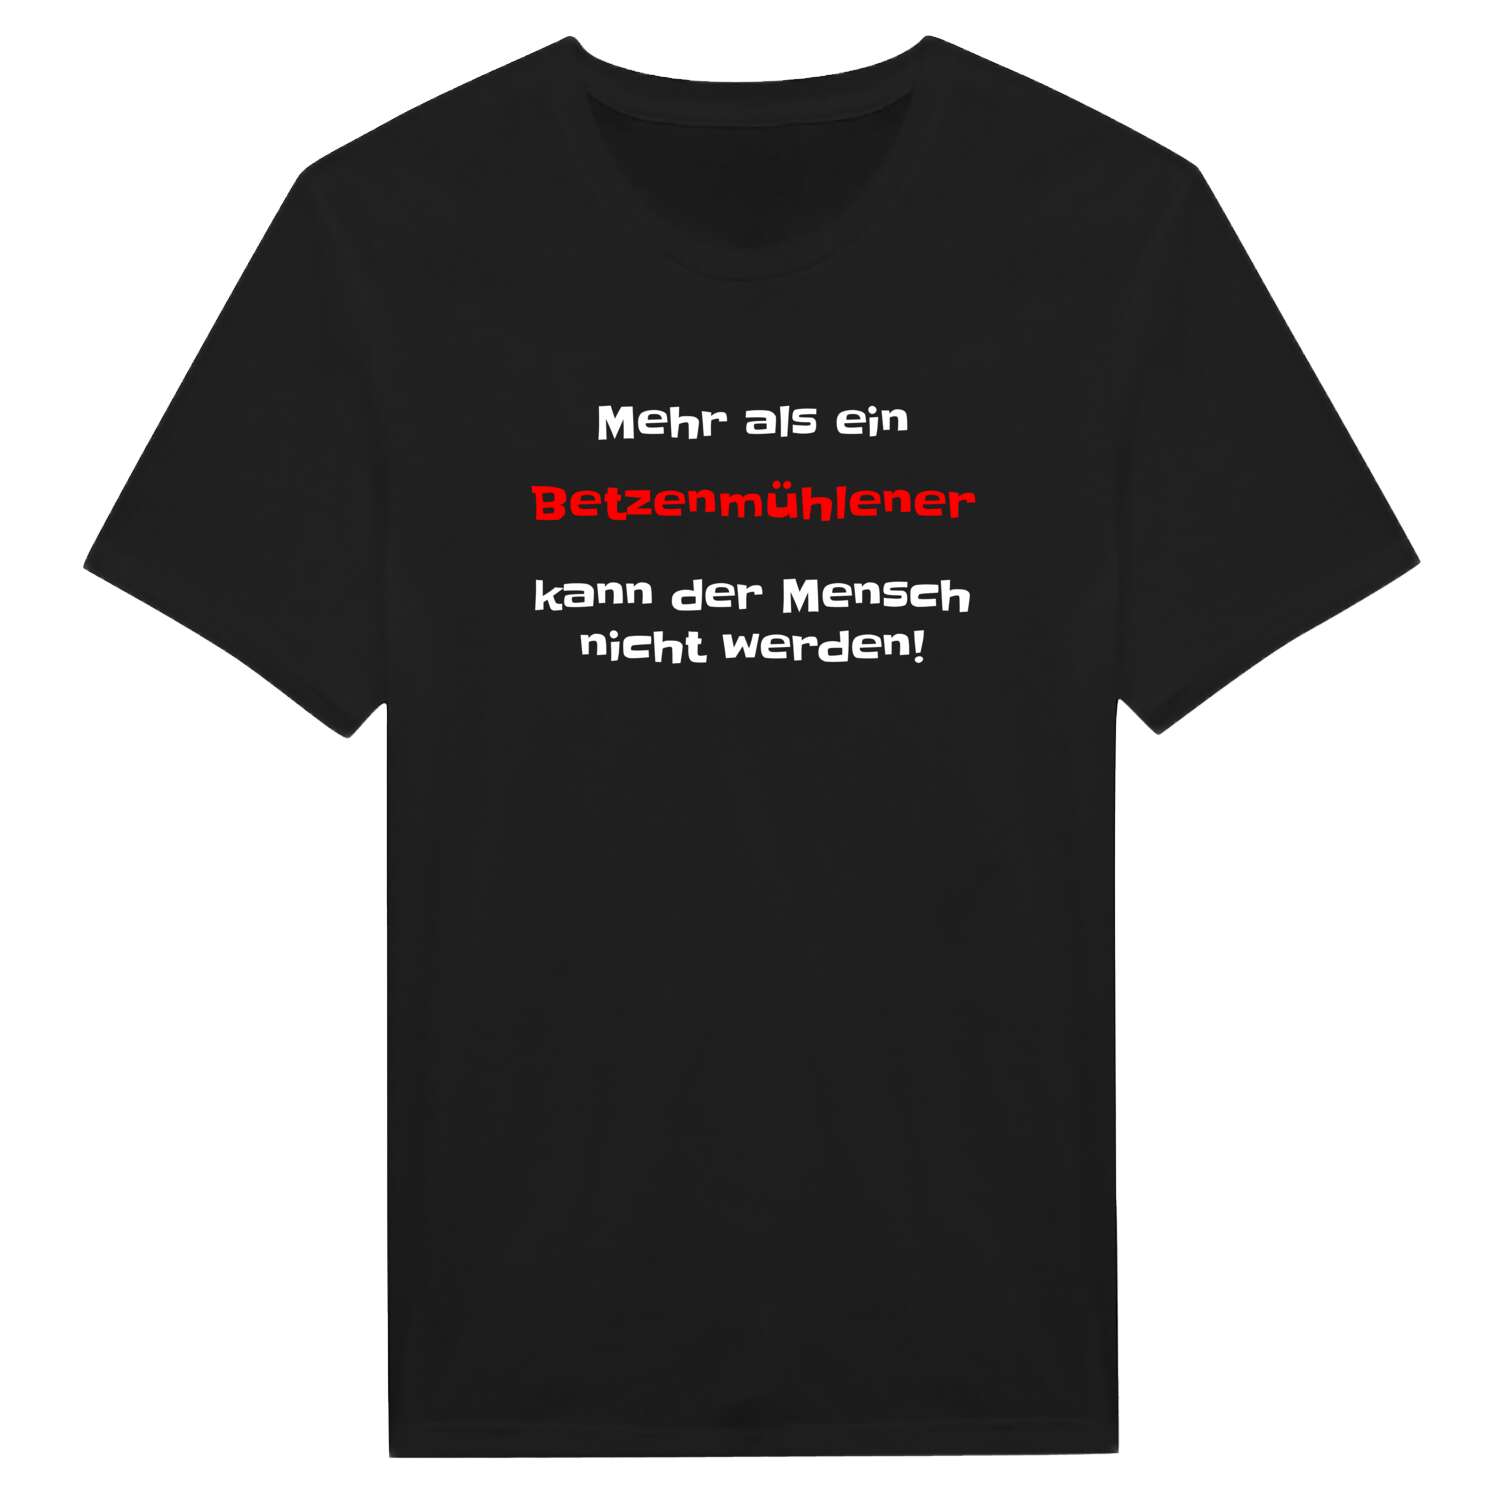 Betzenmühle T-Shirt »Mehr als ein«